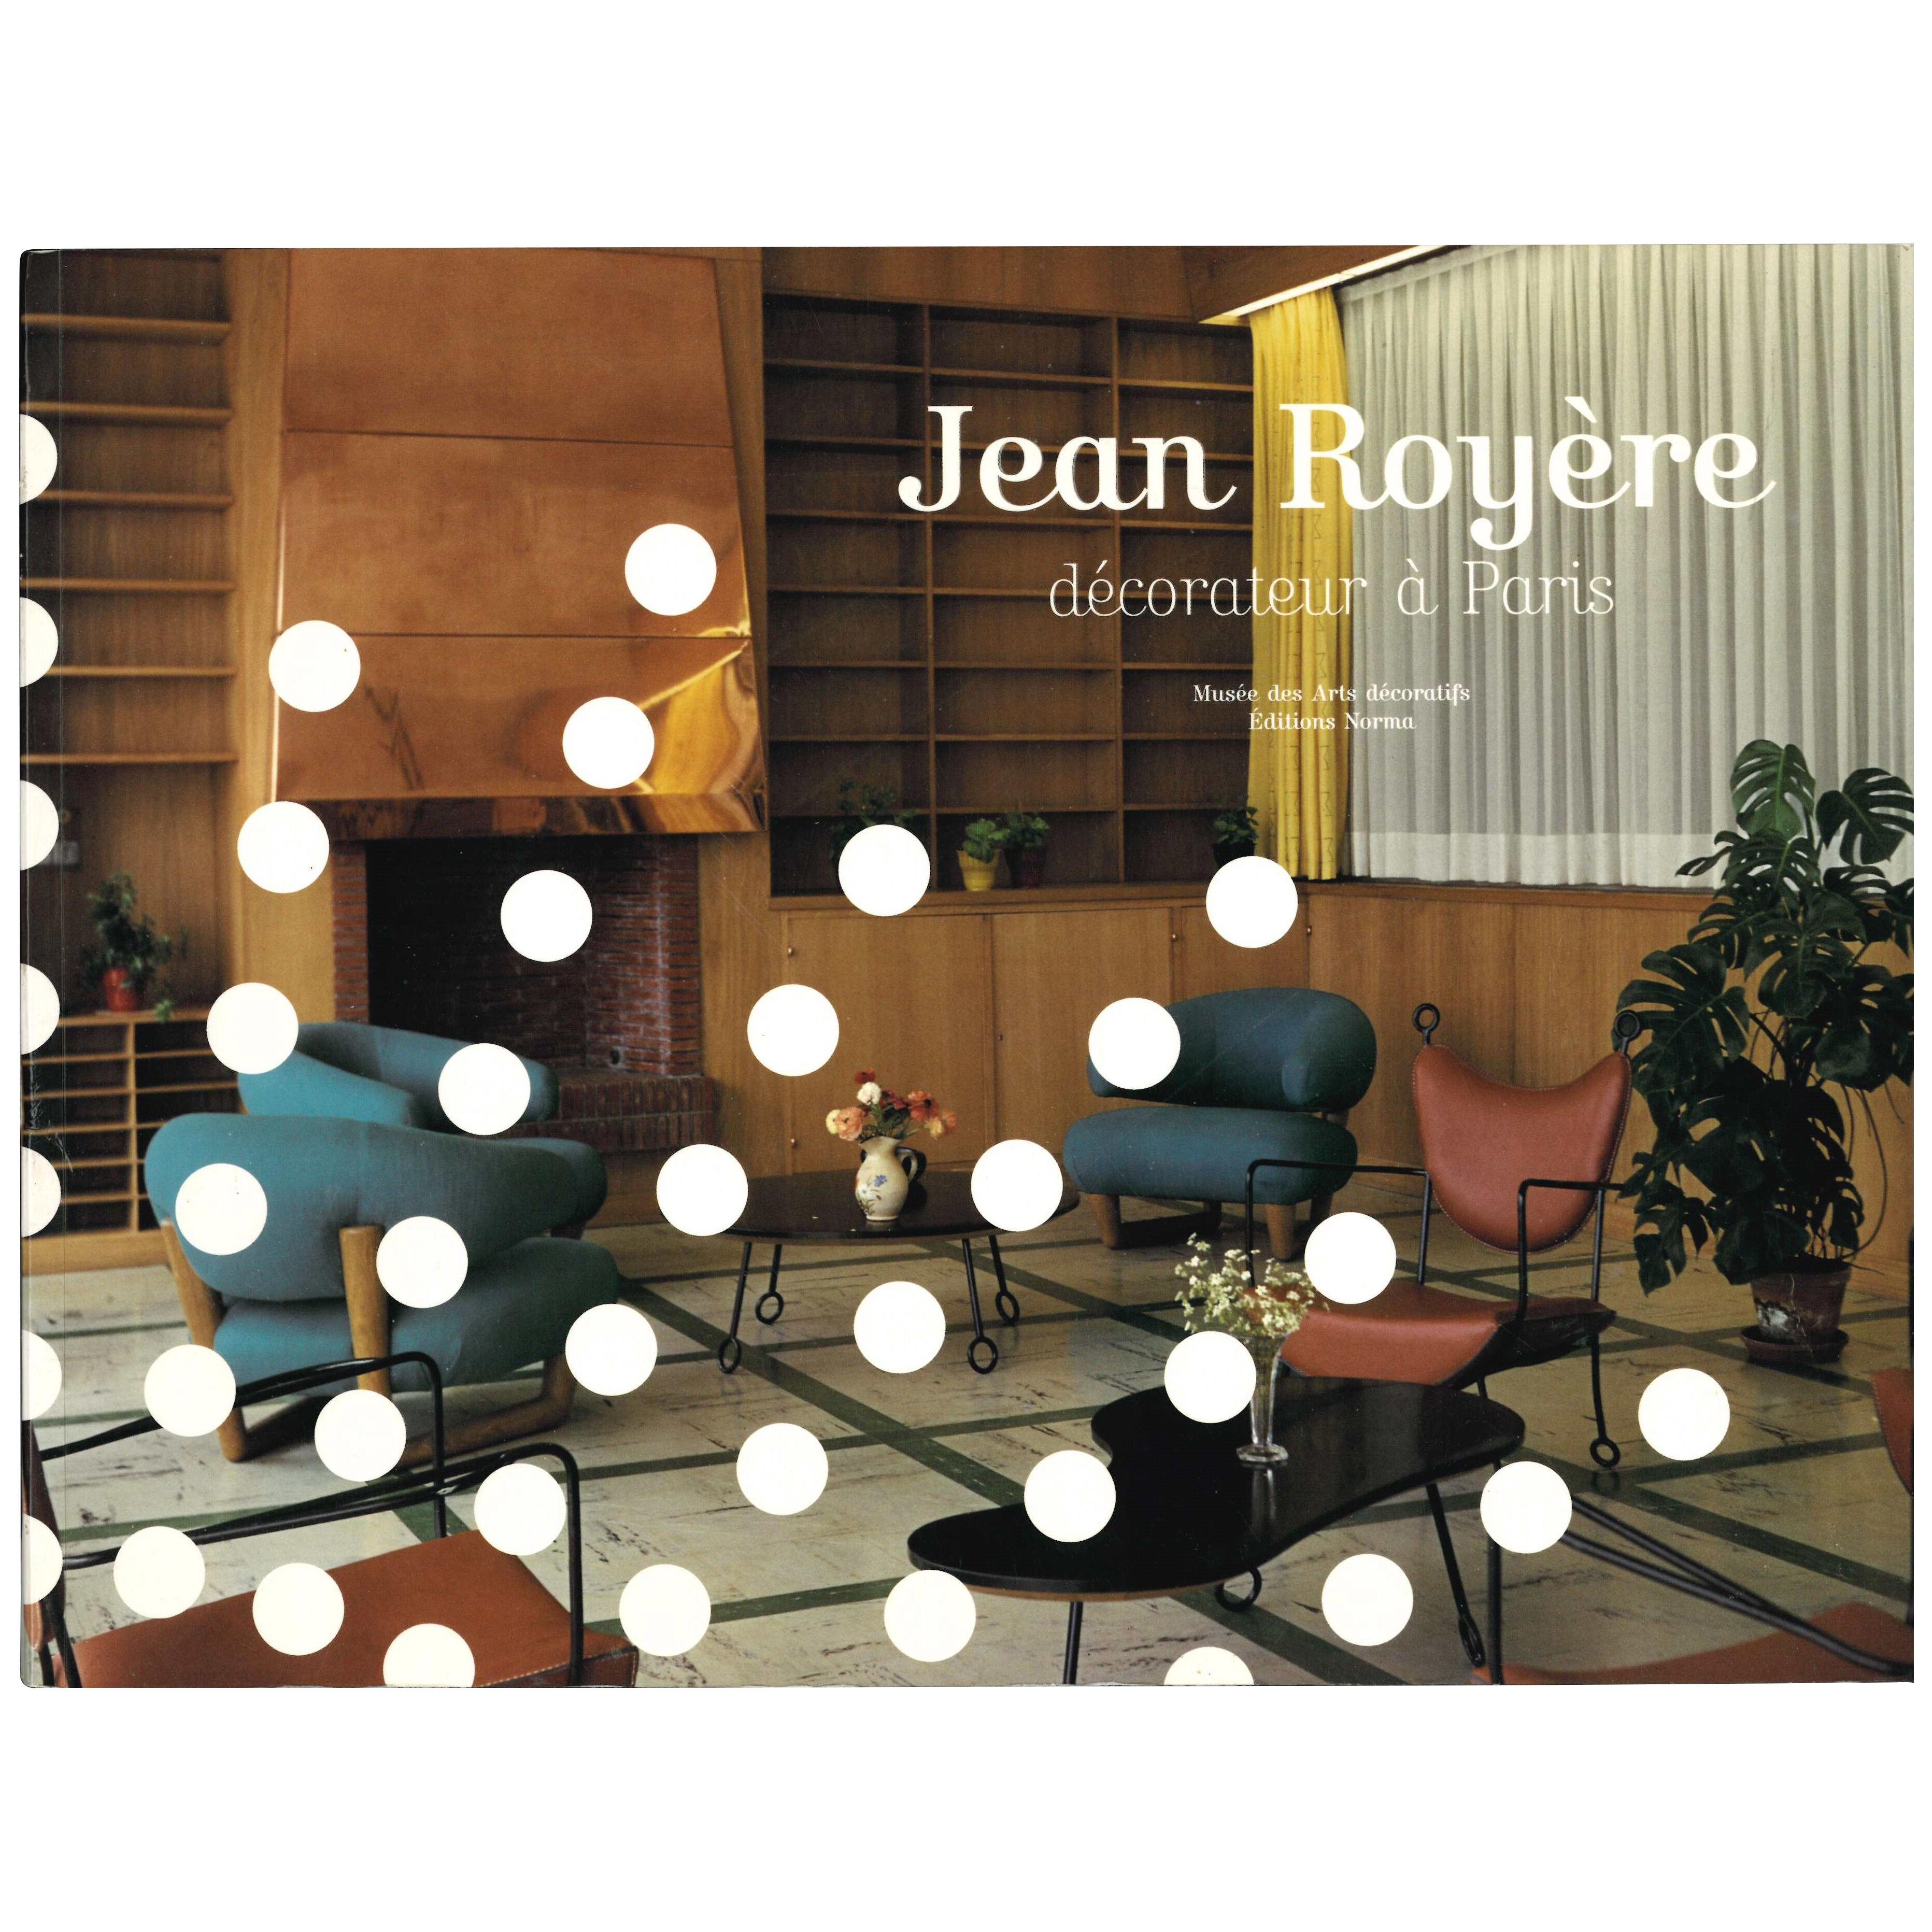 JEAN ROYERE DECORATEUR A PARIS. Book